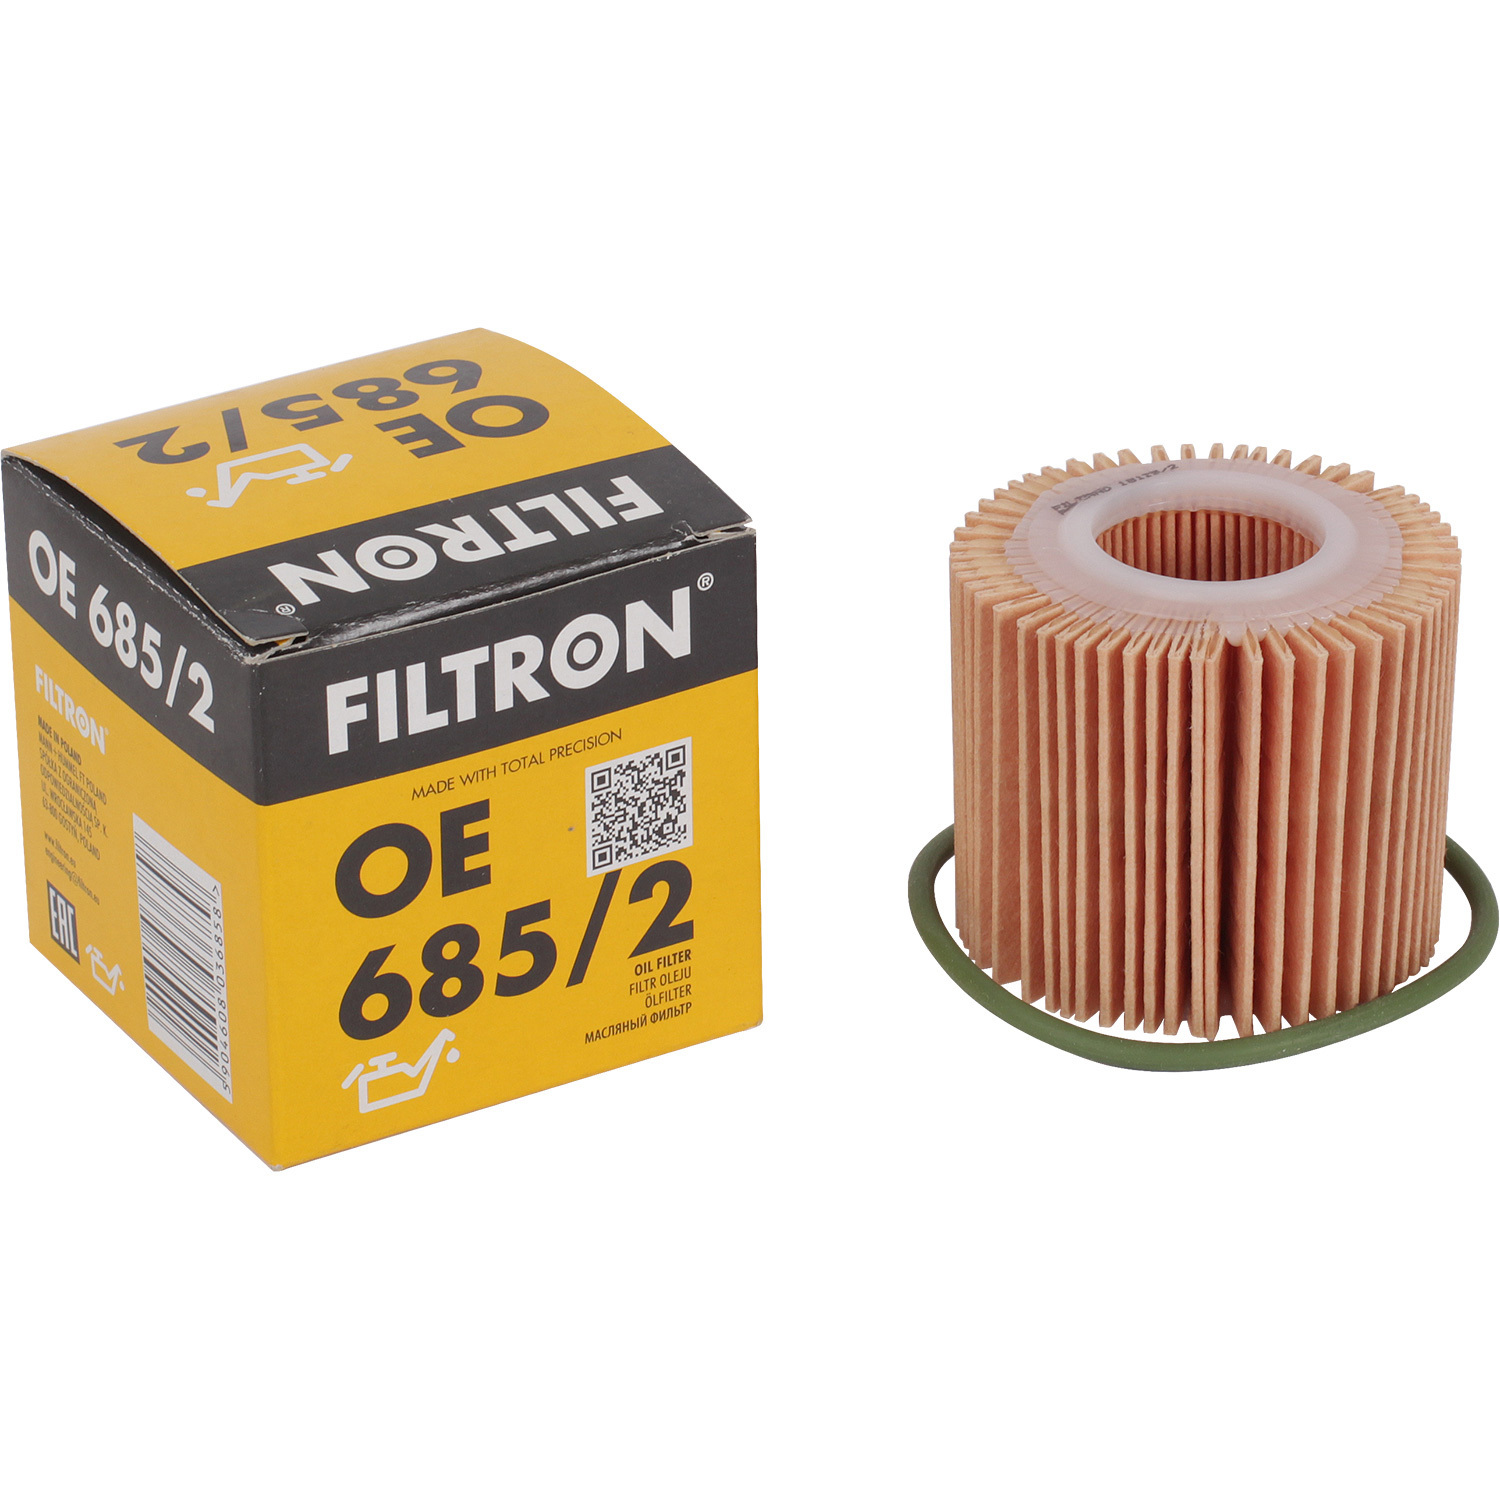 фильтры filtron фильтр масляный filtron op5452 Фильтры Filtron Фильтр масляный Filtron OE6852